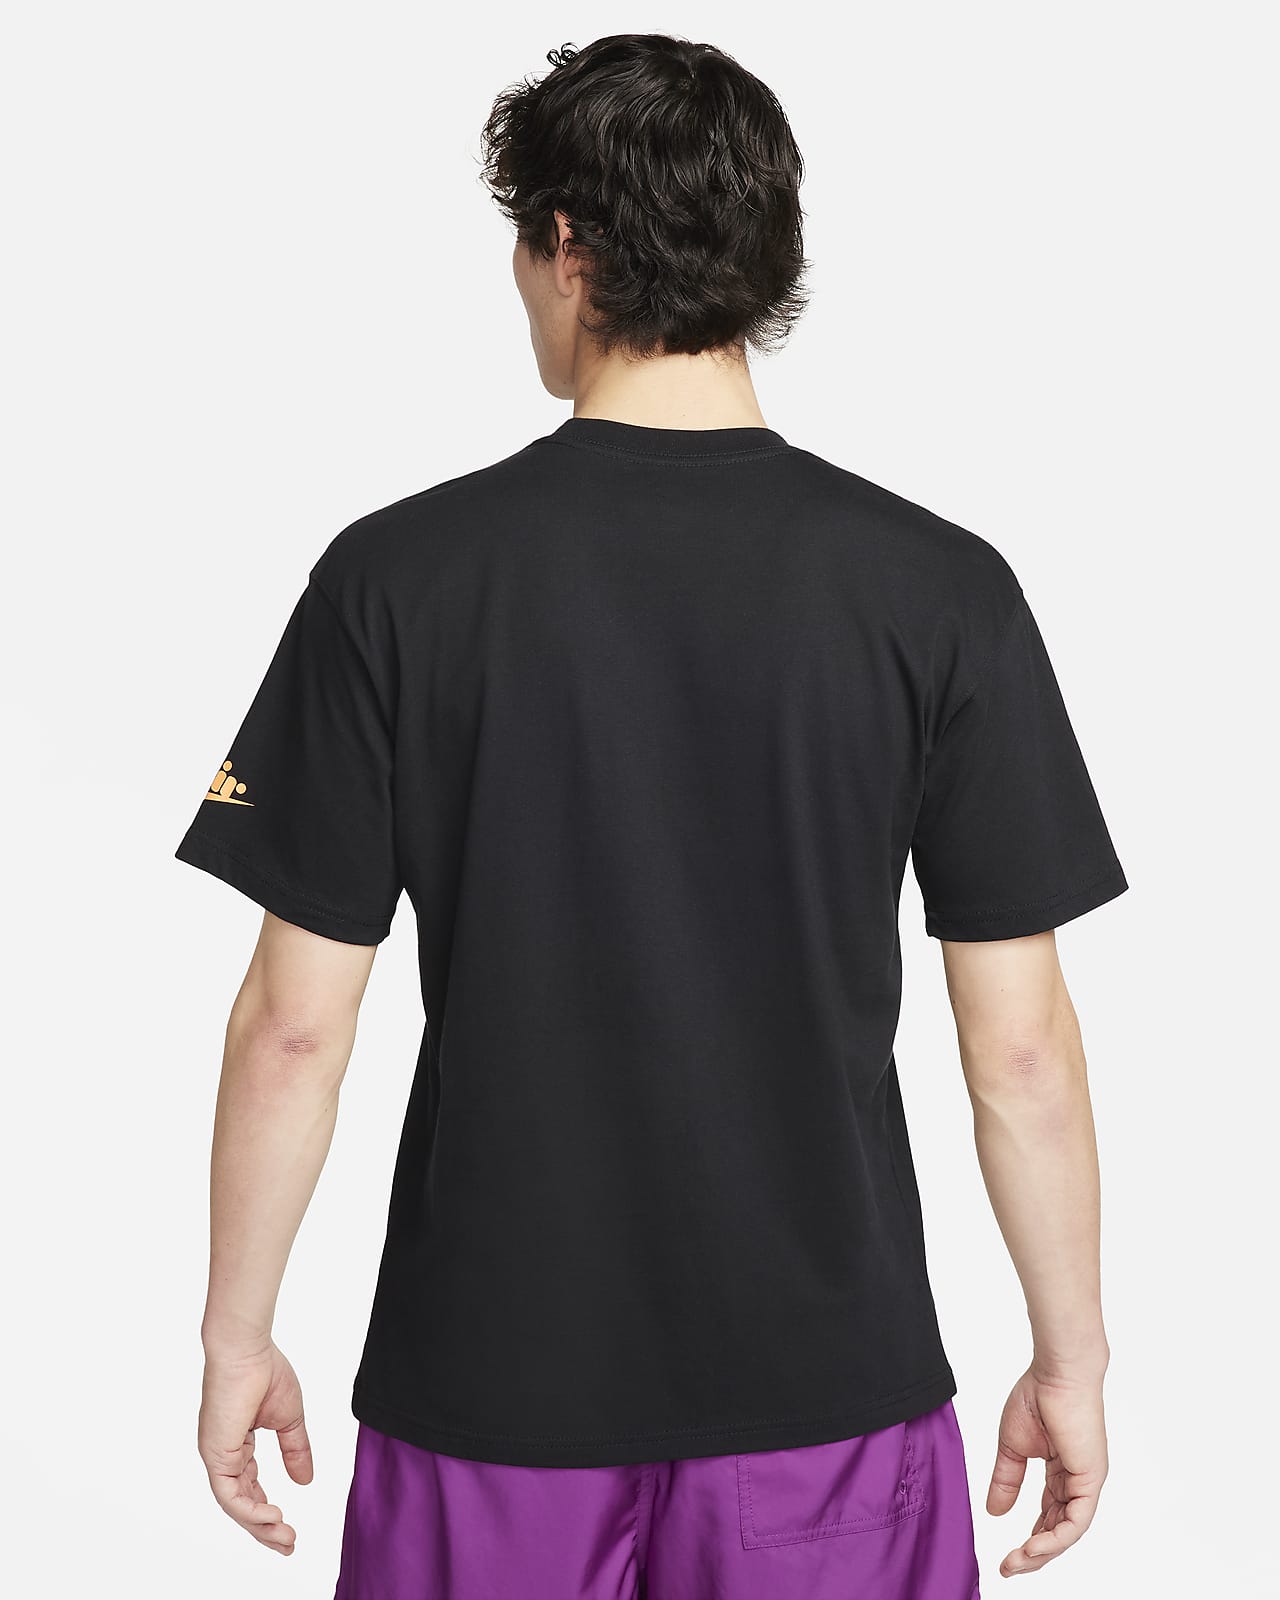 ナイキ スポーツウェア Max90 Tシャツ